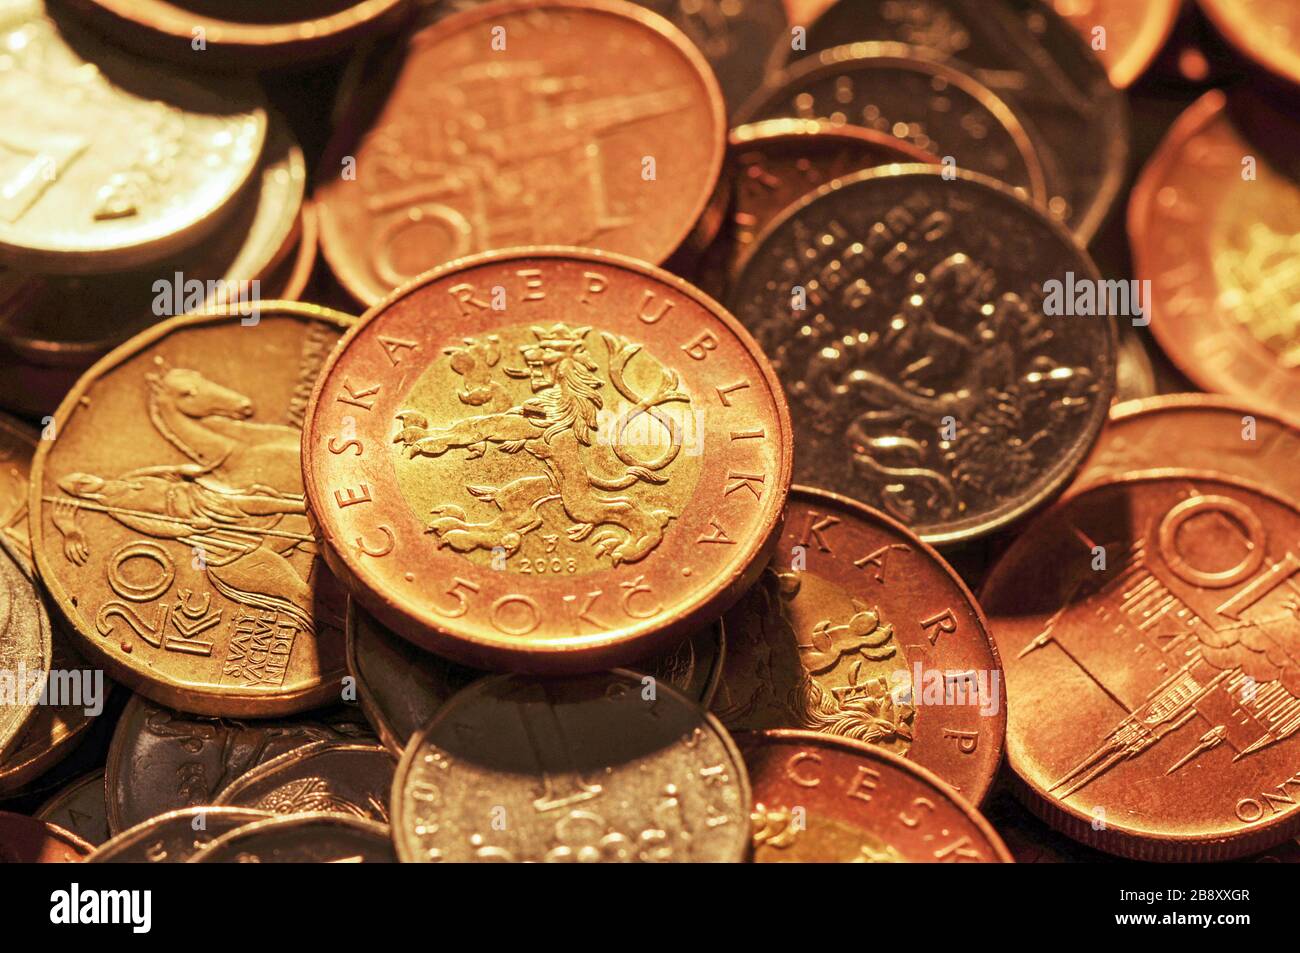 Tschechische Krone - Münzen tschechischer Währung - europa Geld Stockfoto